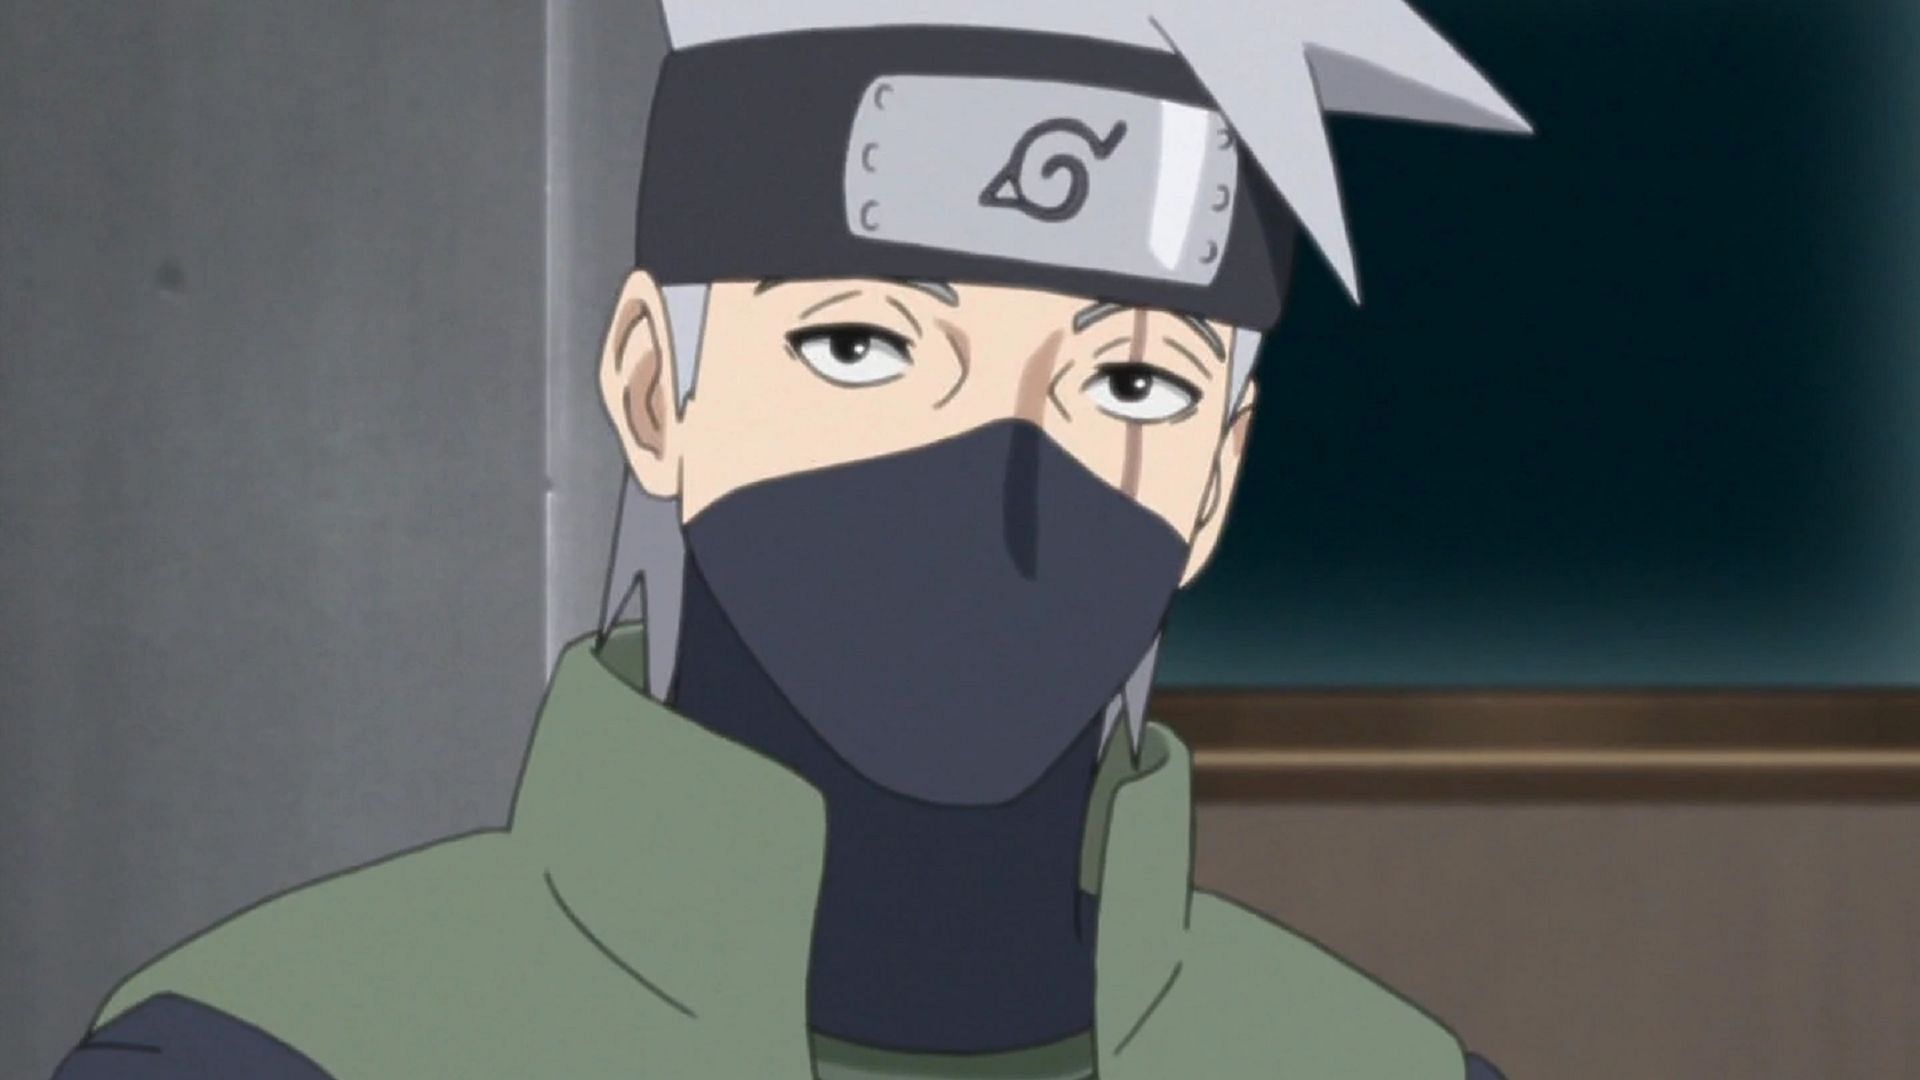 Kakashi as seen in Naruto (Image via Studio Pierrot)